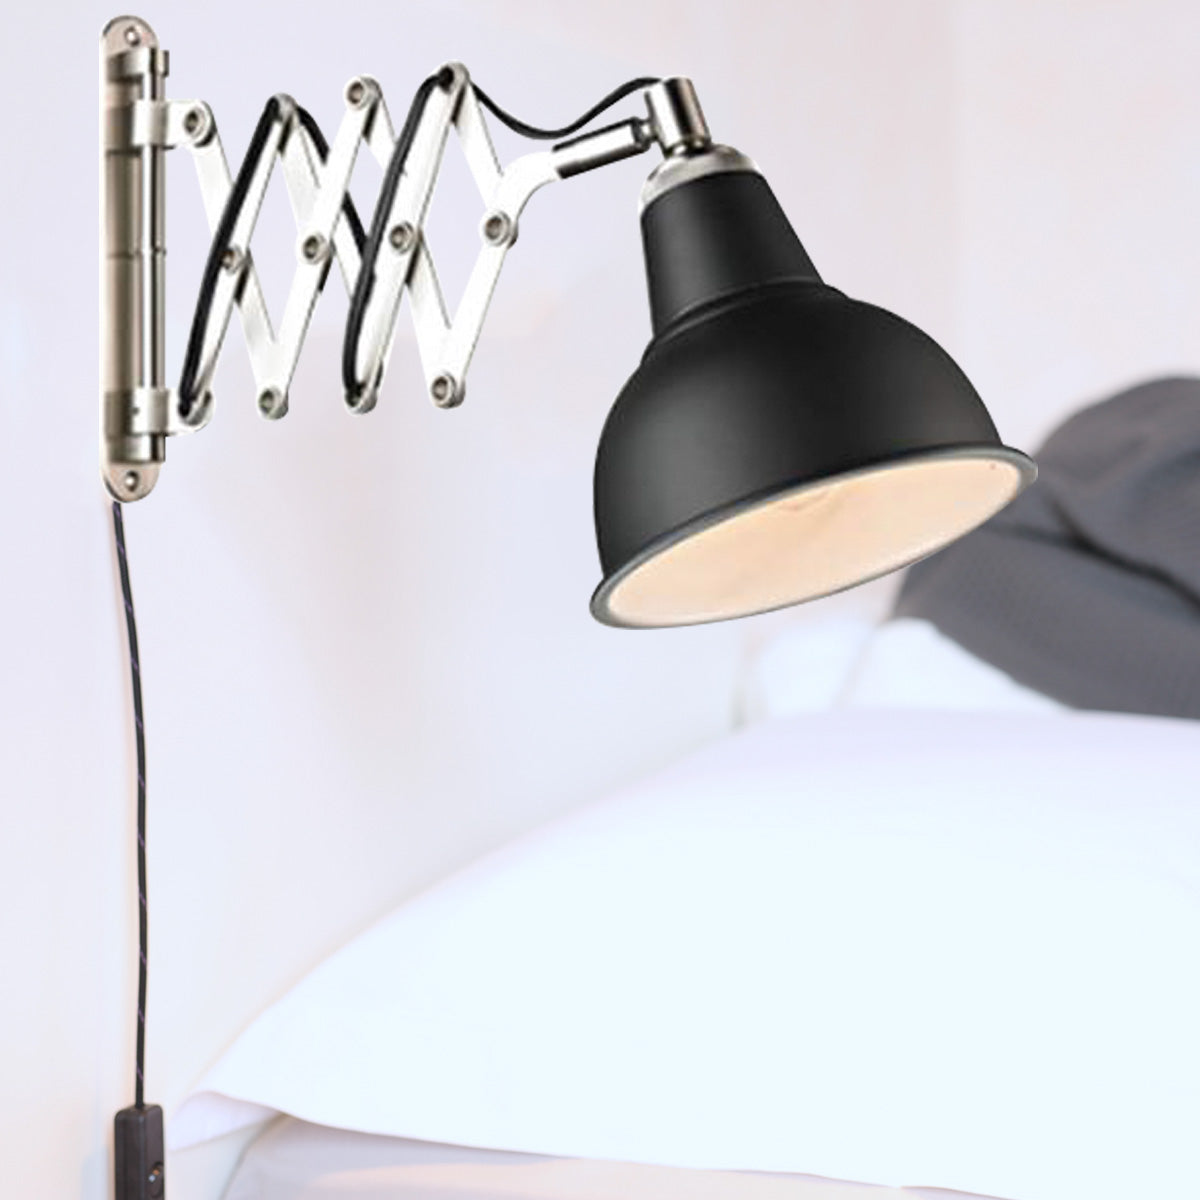 Georgetown Adjustable Wall Lamp